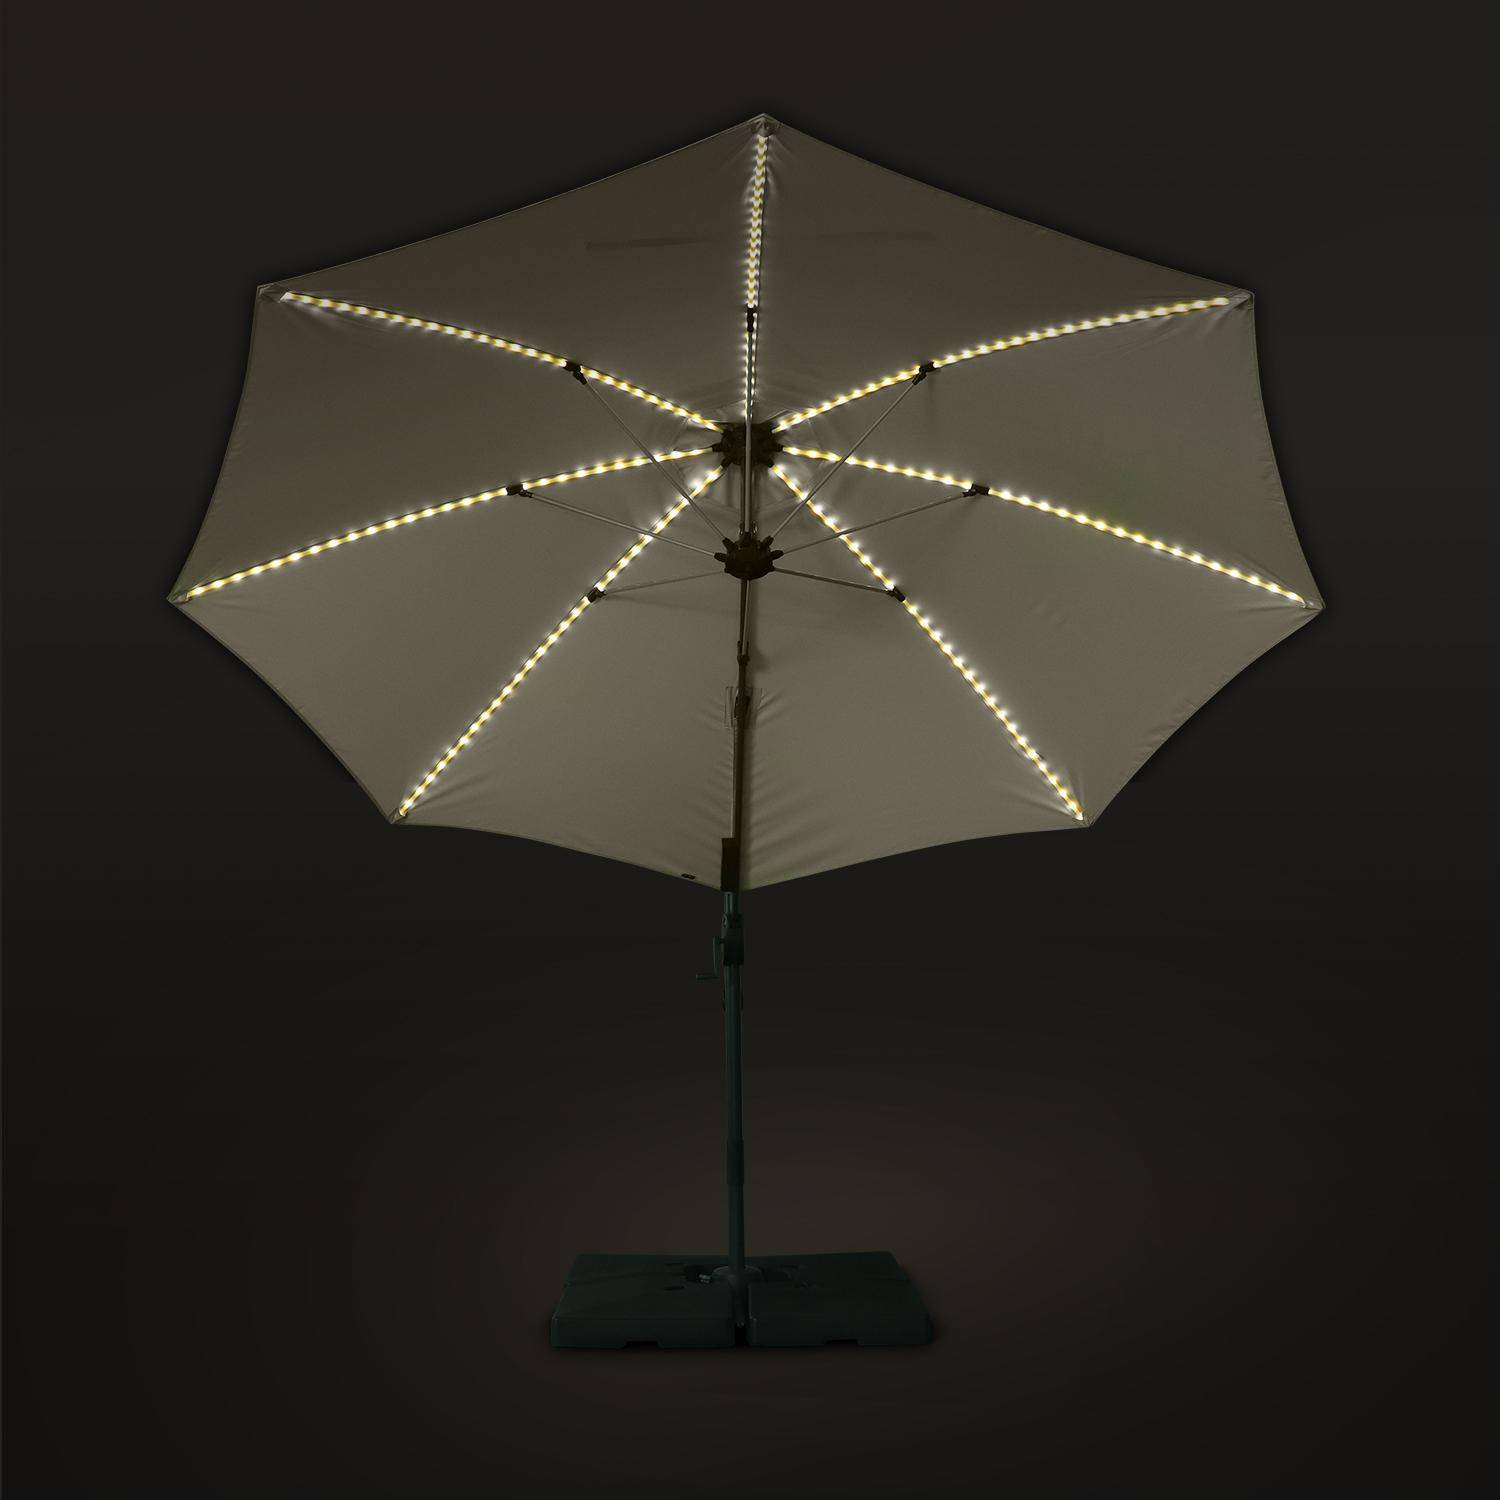 Ombrellone led tondo decentrato Ø300 cm - Dinard - Beige - ombrellone decentrato, basculante, ribaltabile e girevole 360°, stecche in fibra di vetro Photo4